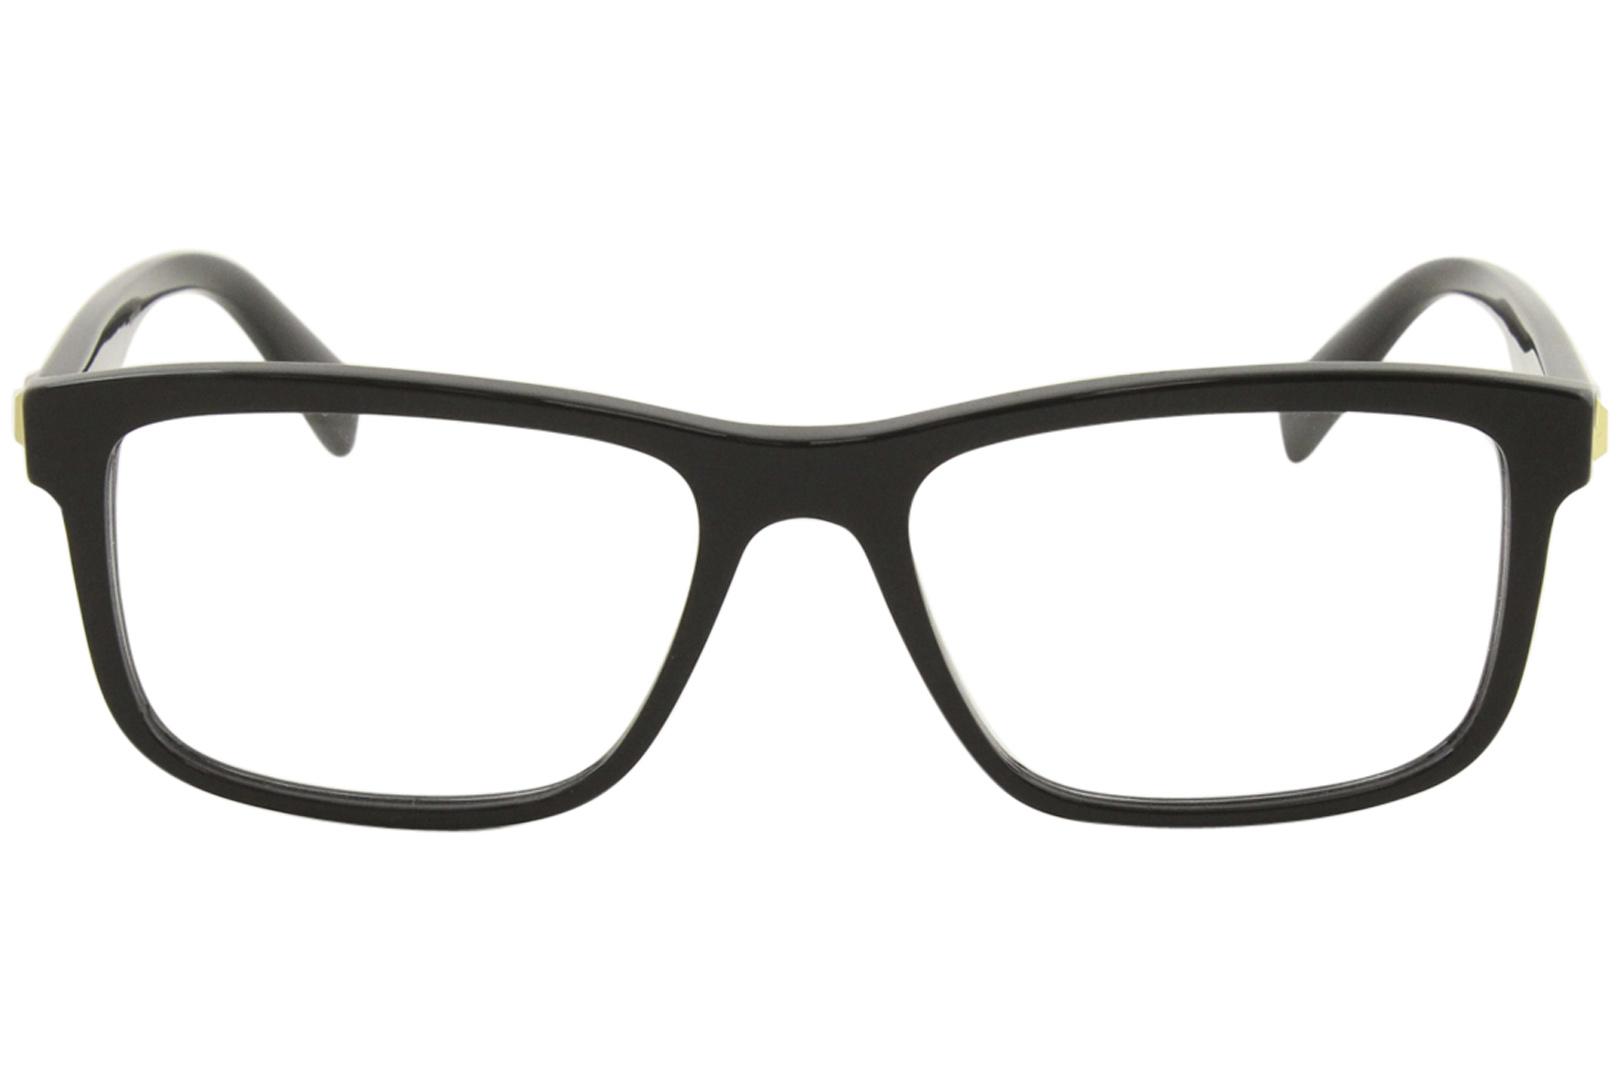 Versace Men's VE3253 108 Dark Havana Full Rim Rectangular Eyeglasses ...